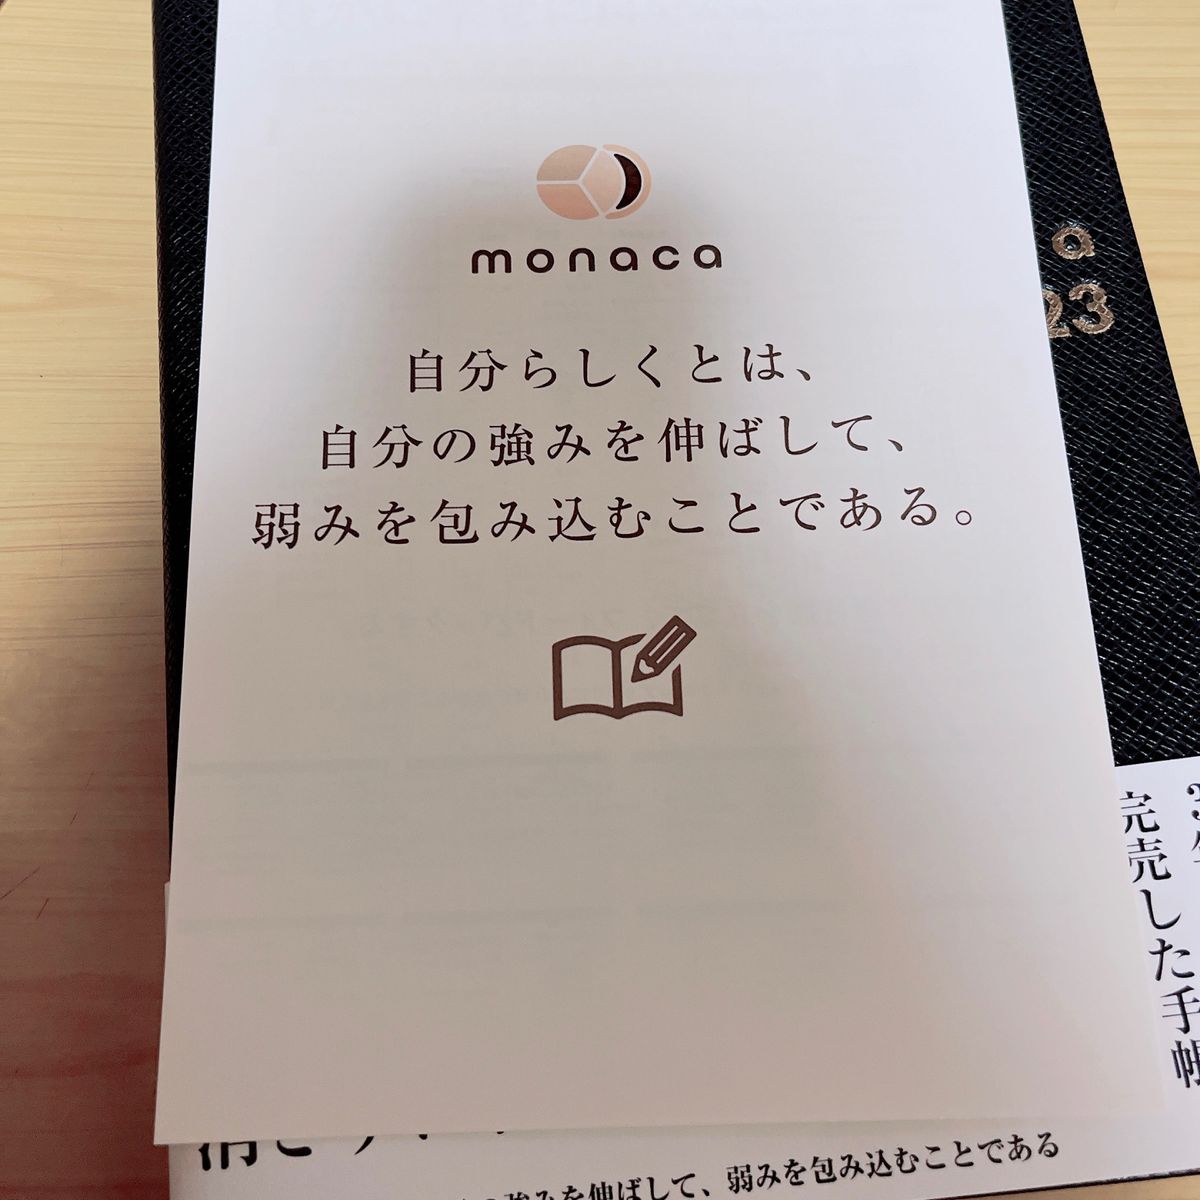 monaca 手帳 フェイクレザー A5 2023年1月始まり マネジメント ビジネス手帳 カレンダー ダイアリー